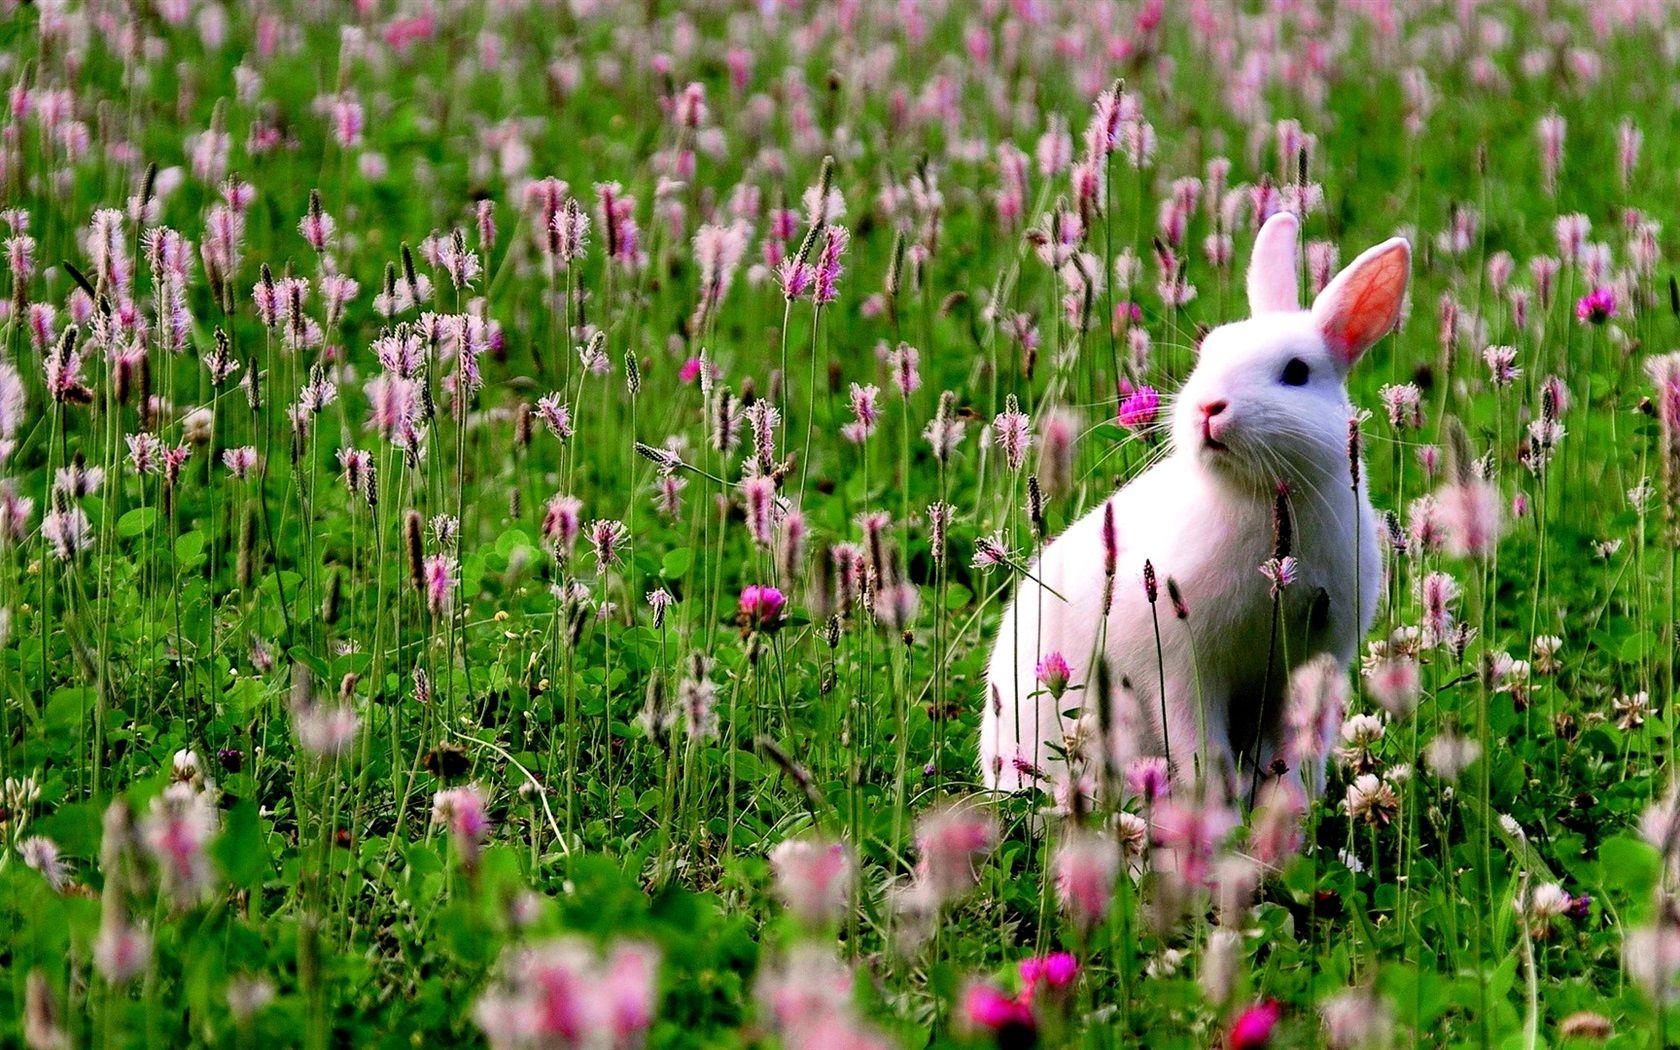 Hình nền 1680x1050 Chú thỏ trắng trong hoa 1920x1080 Hình ảnh Full HD 2K, Hình ảnh